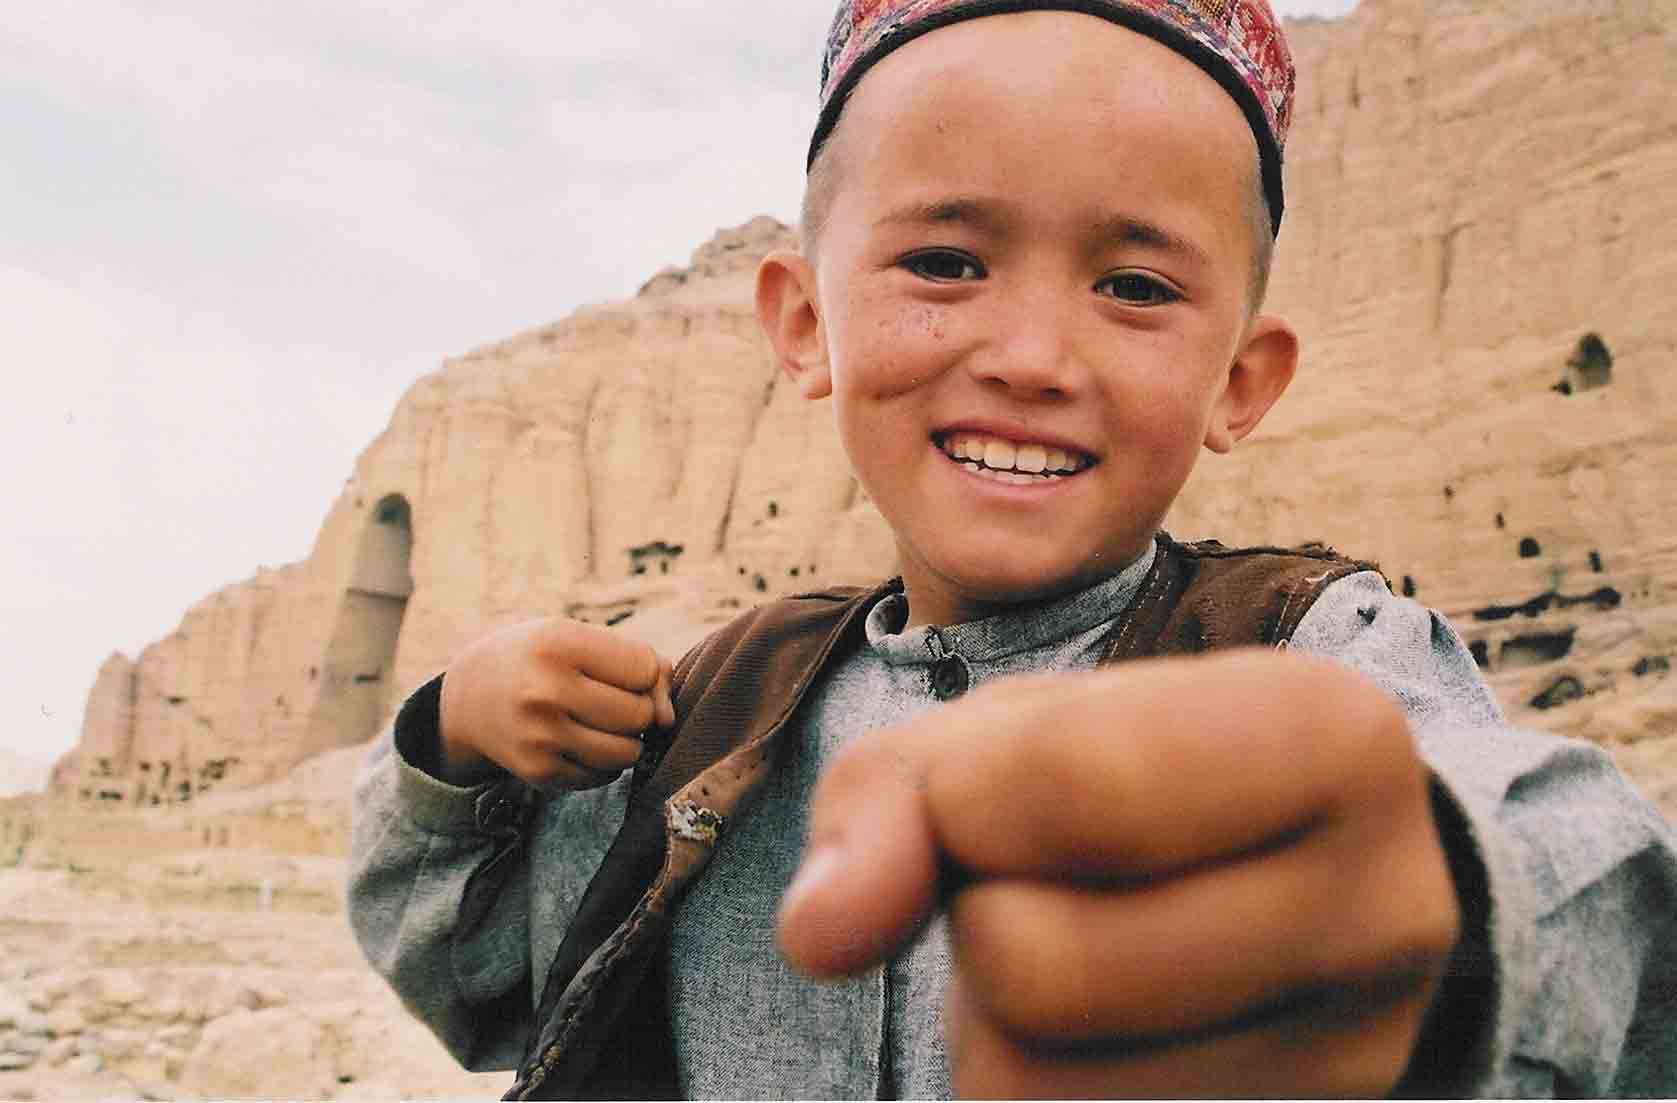 SLAVNOSTNÍ ZAHÁJENÍ + Mé dětství, má země – 20 let v Afghánistánu + DEBATA